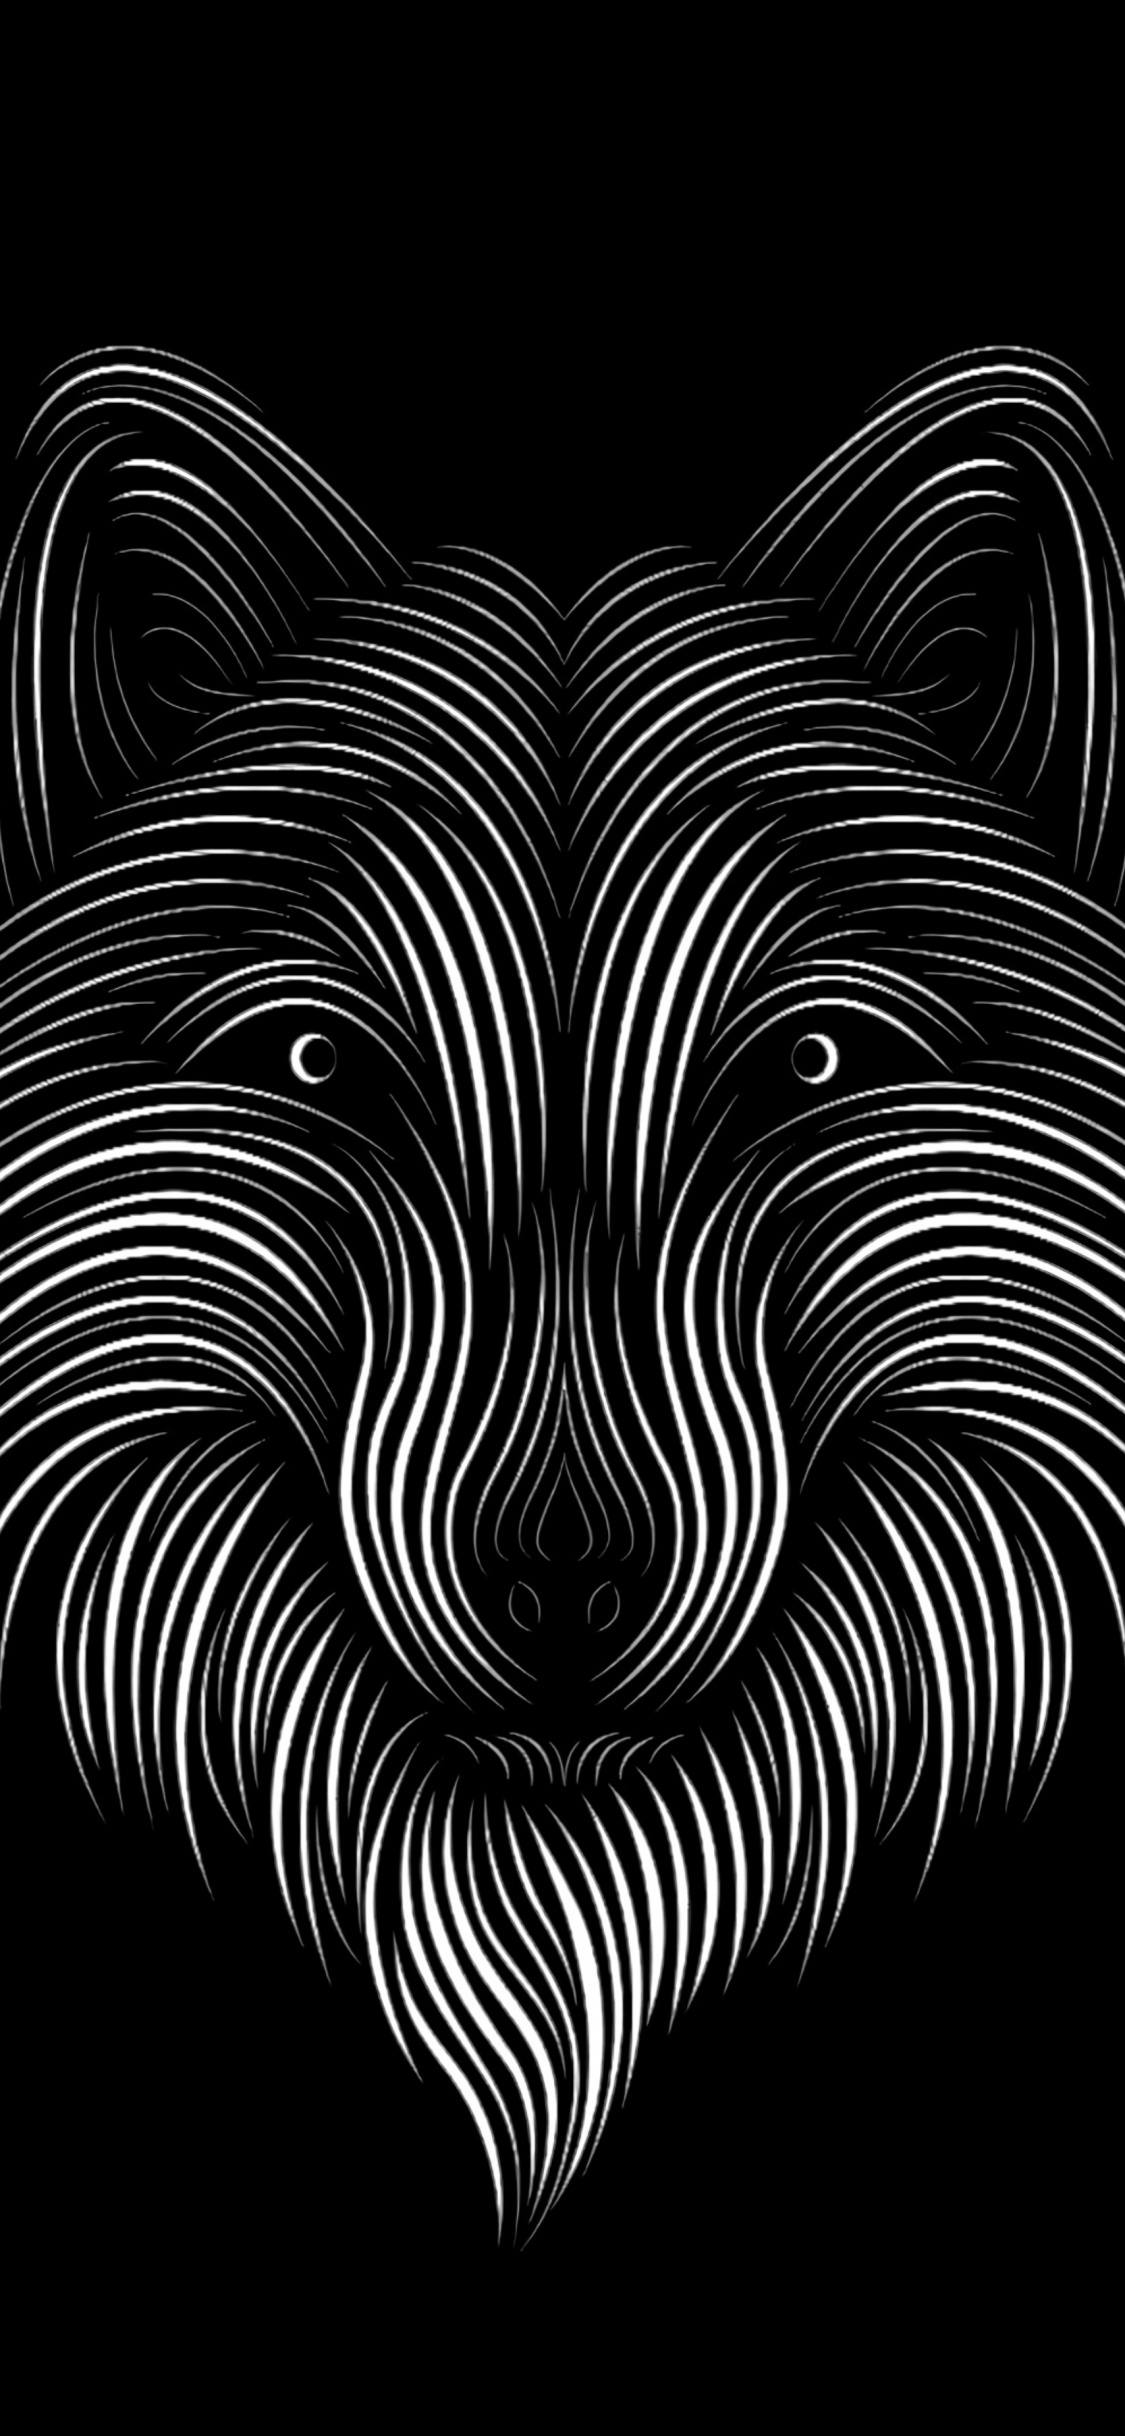 Schwarz-Weiß-Zebra-Illustration. Wallpaper in 1125x2436 Resolution